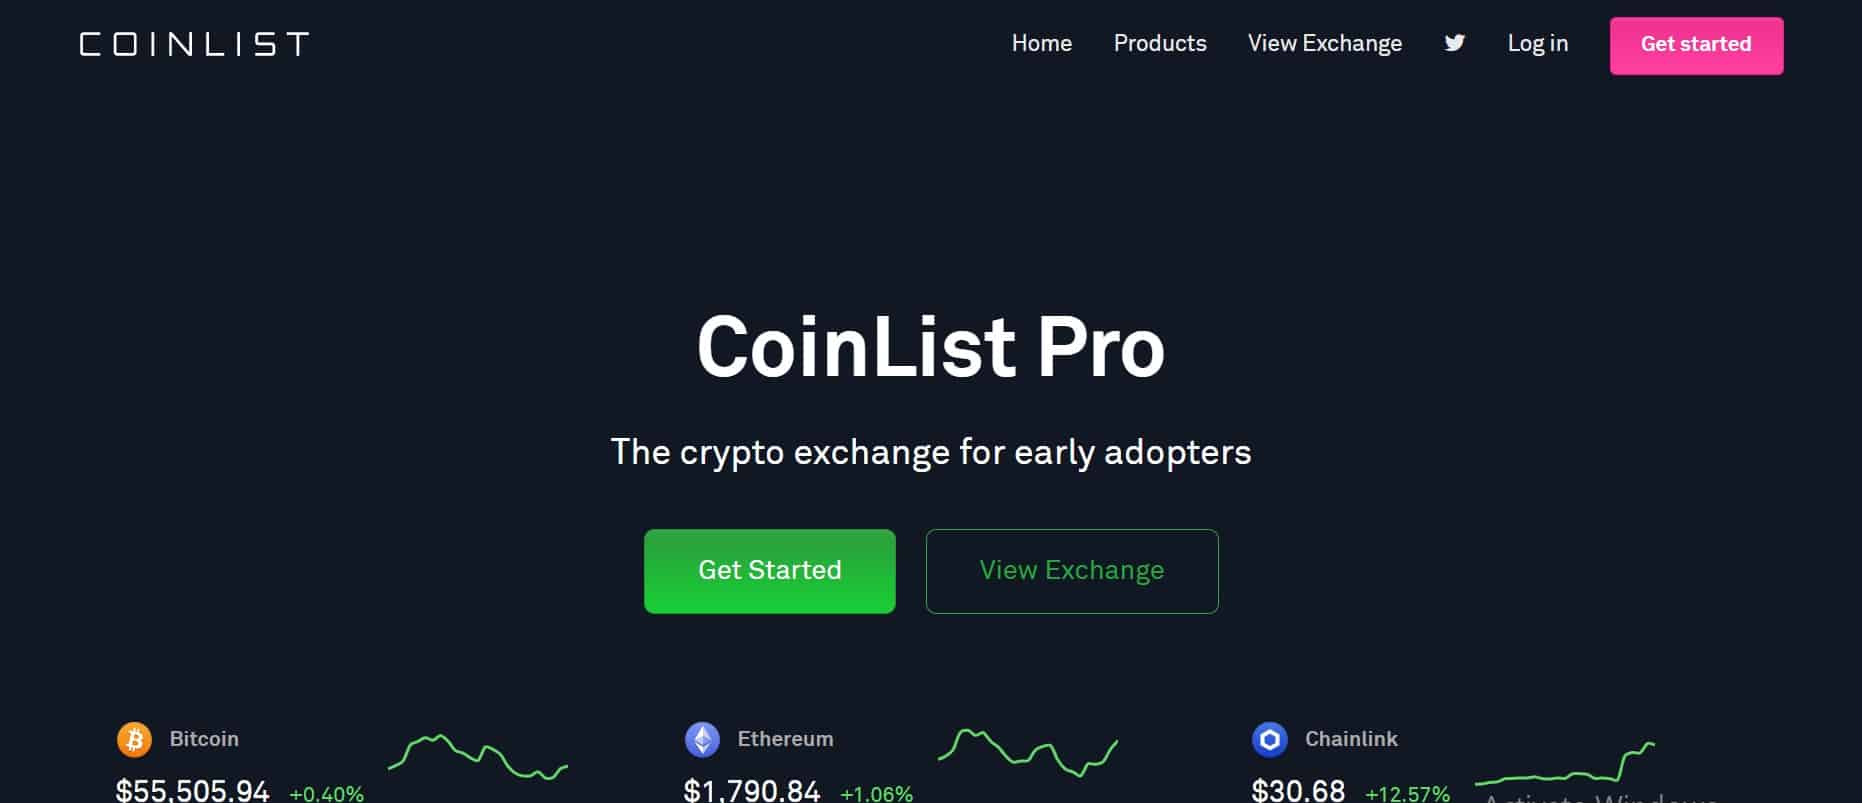 CoinList Pro website